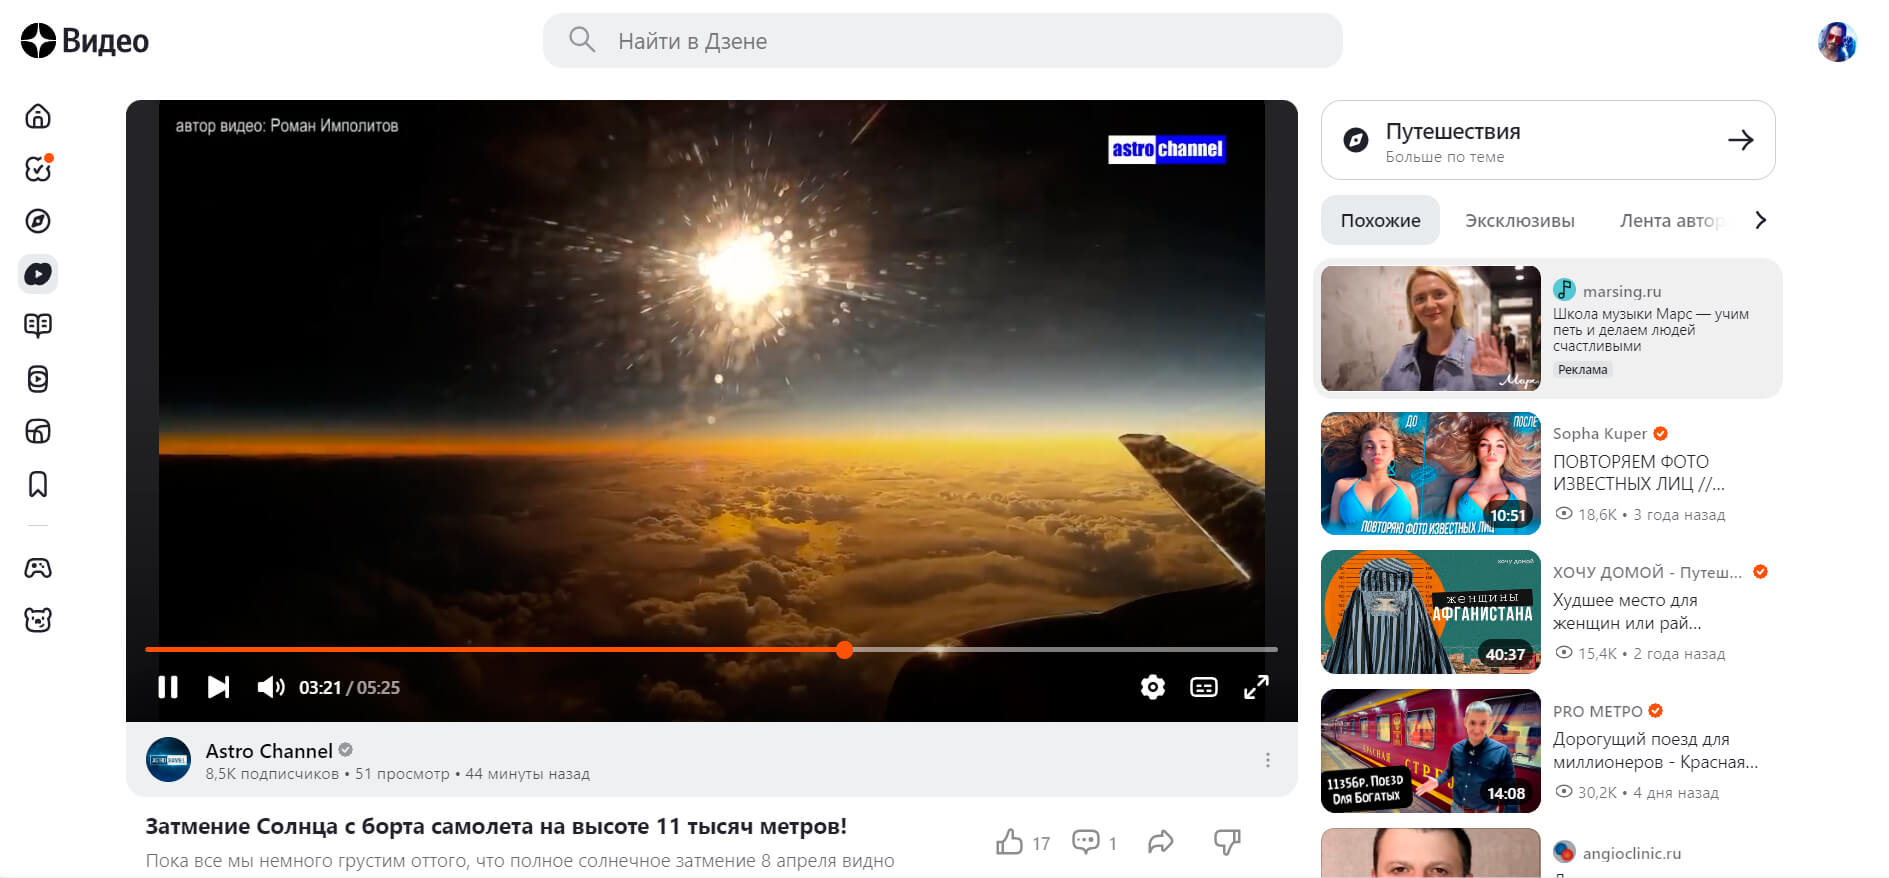 Яндекс.Дзен (скриншот, фото)